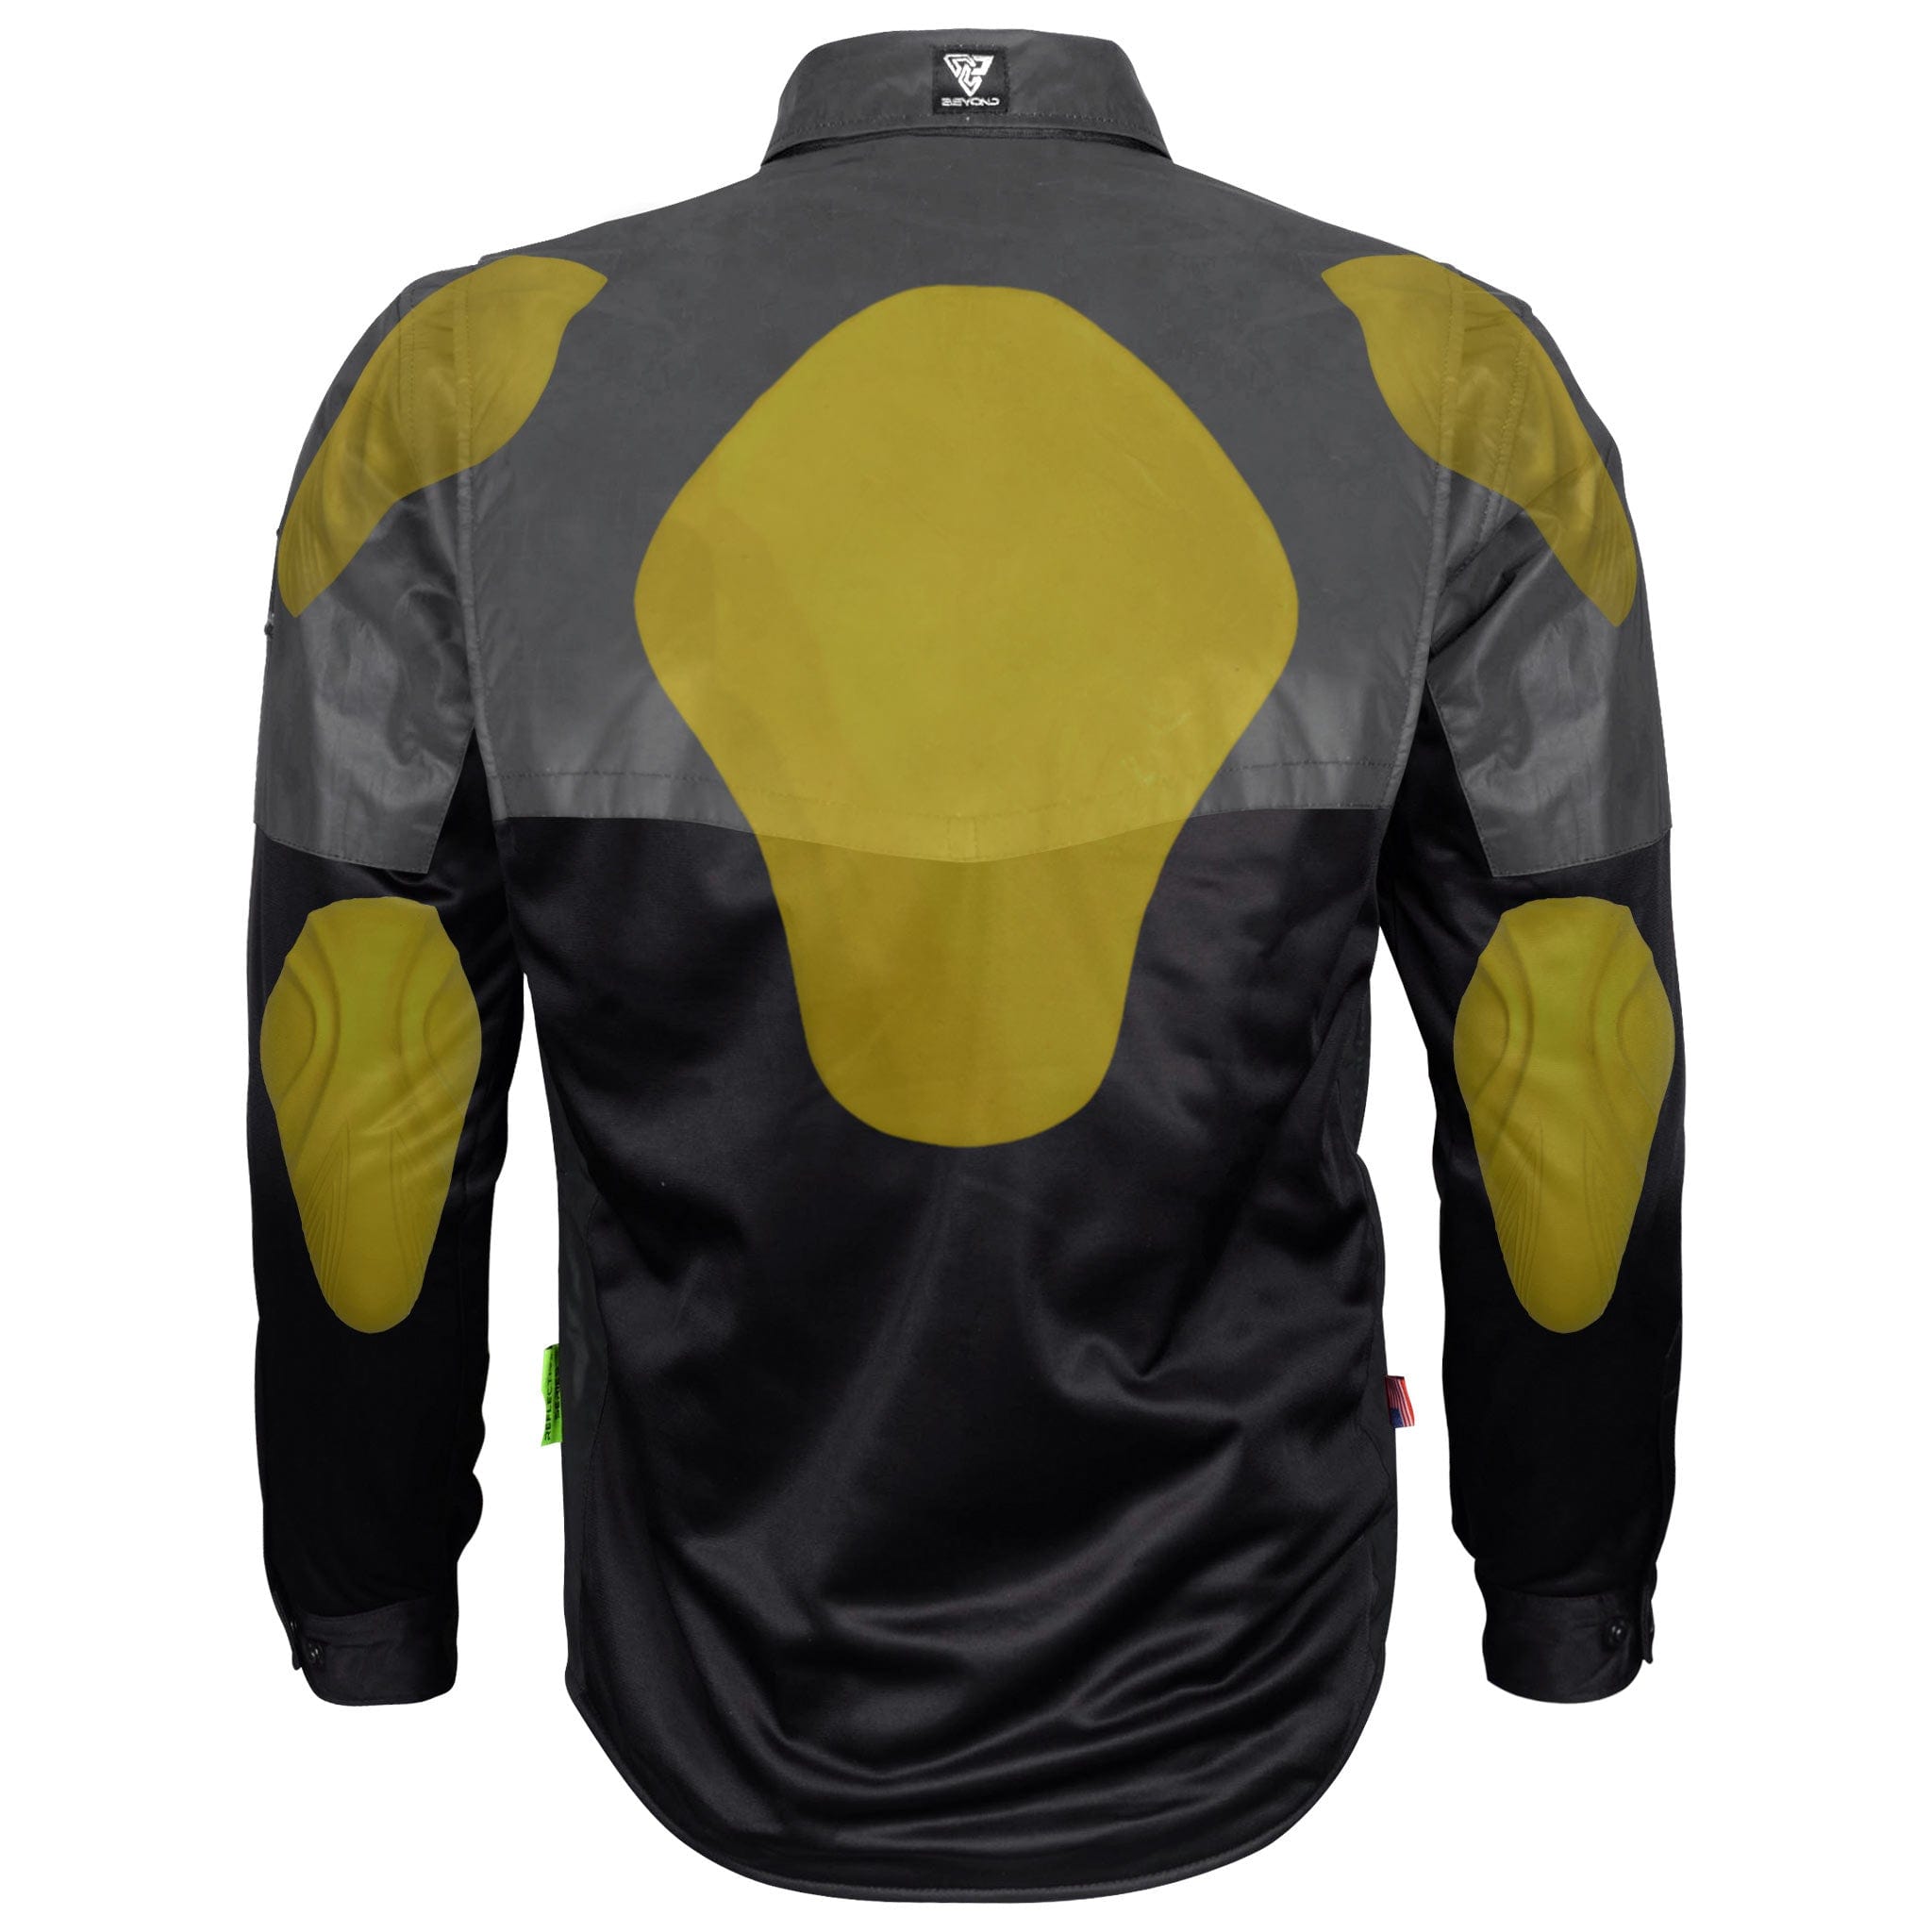 Ultra Reflective Shirt "Nightfall Nebula" - Black with Pads